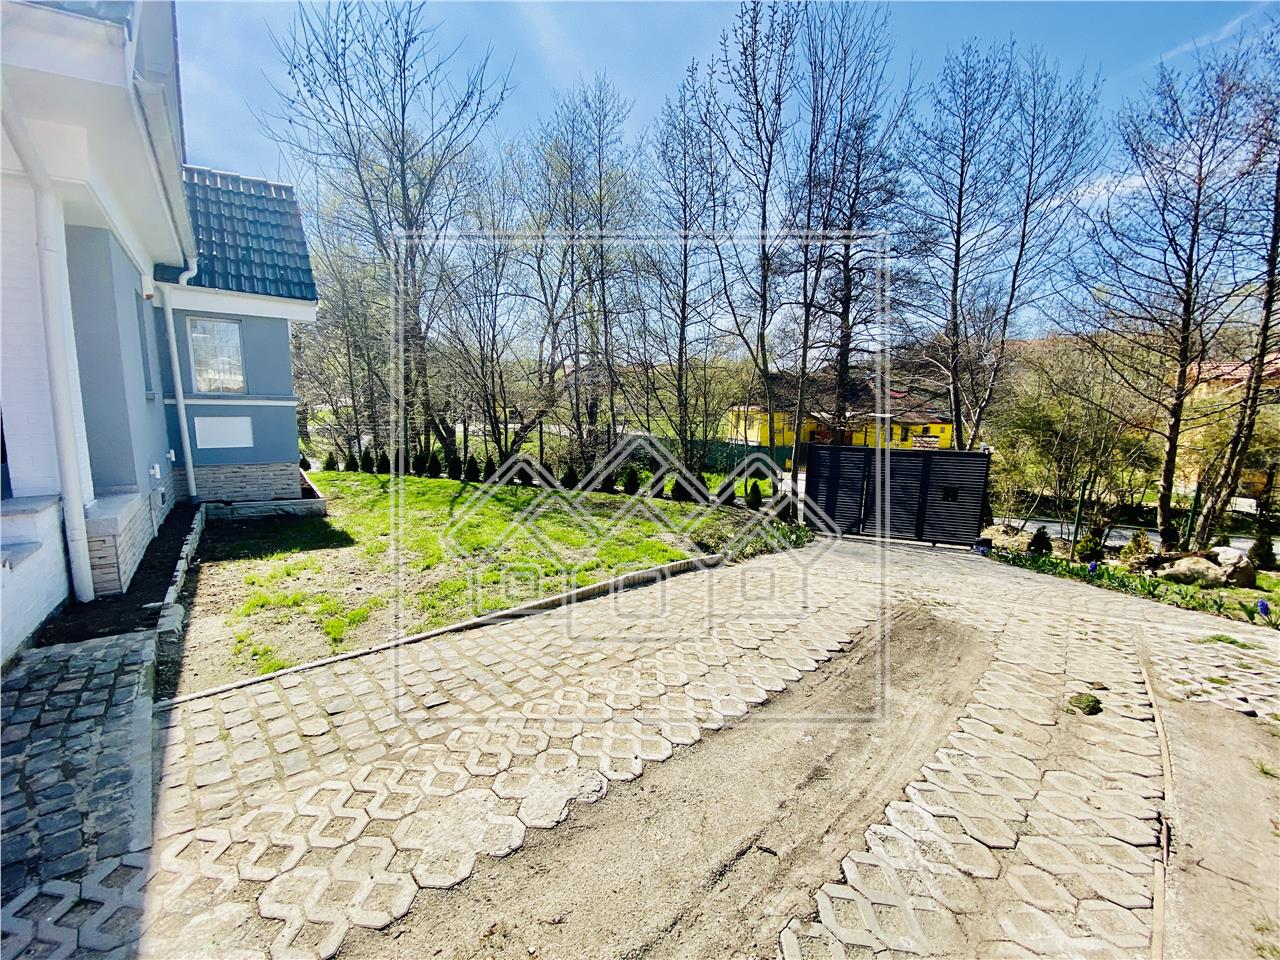 Casa de vanzare in Sibiu - 130 mp cu teren de 1000 mp - Cisnadie